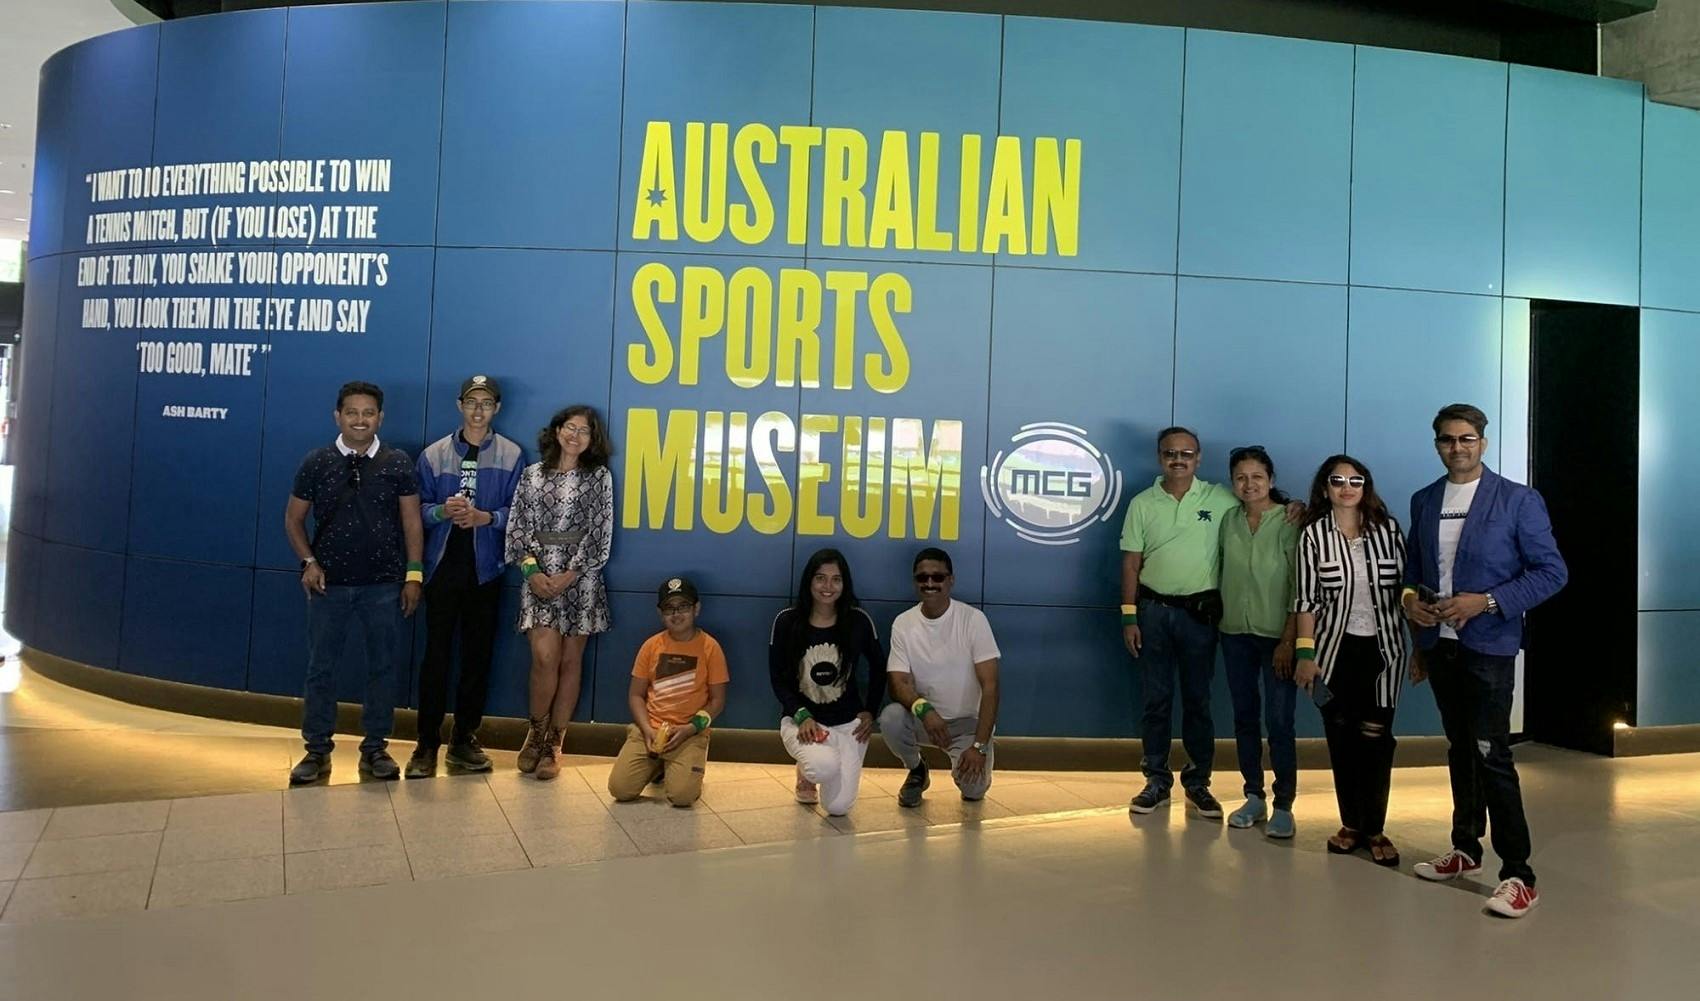 Rondleiding door het sportgebied van Melbourne en het Australian Sports Museum